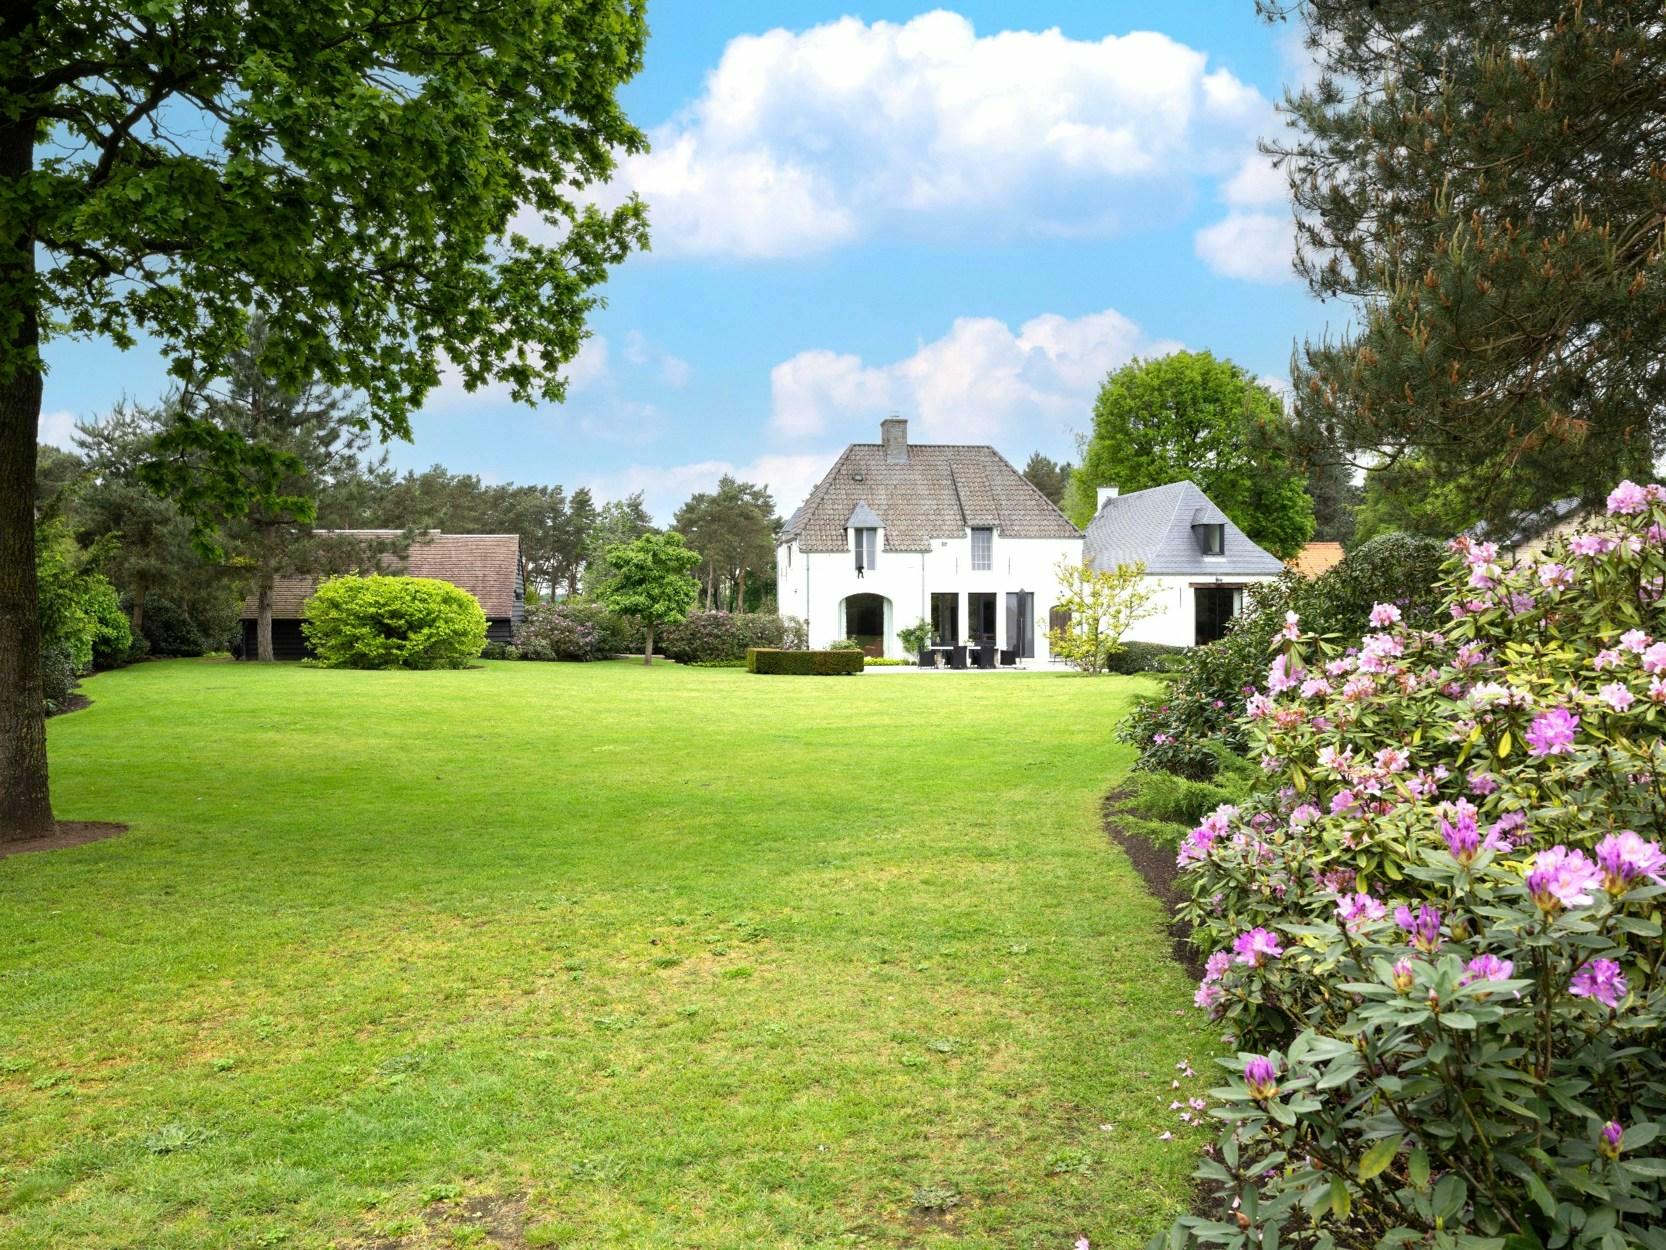 Exclusieve villa met eventuele praktijkruimte en naastliggende bouwgrond op perceel van ca. 4024m² te Herentals!